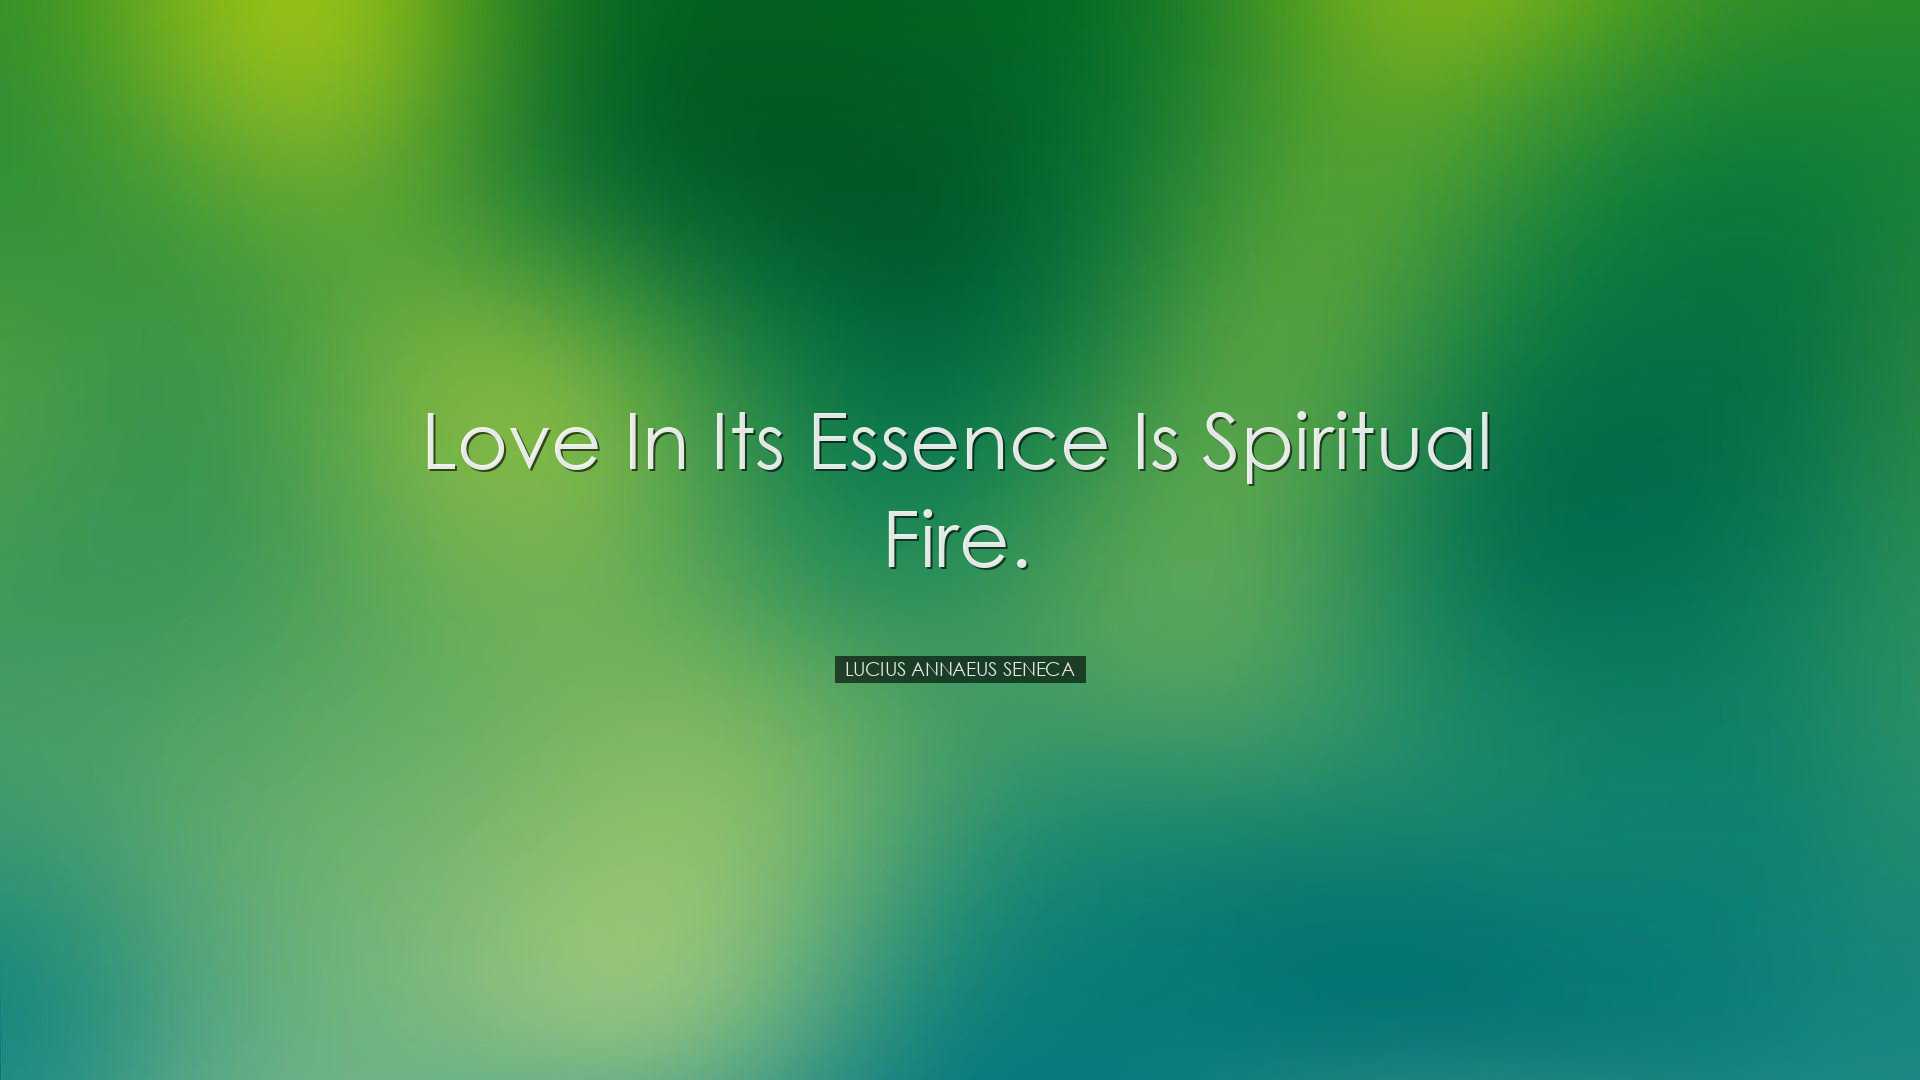 Love in its essence is spiritual fire. - Lucius Annaeus Seneca